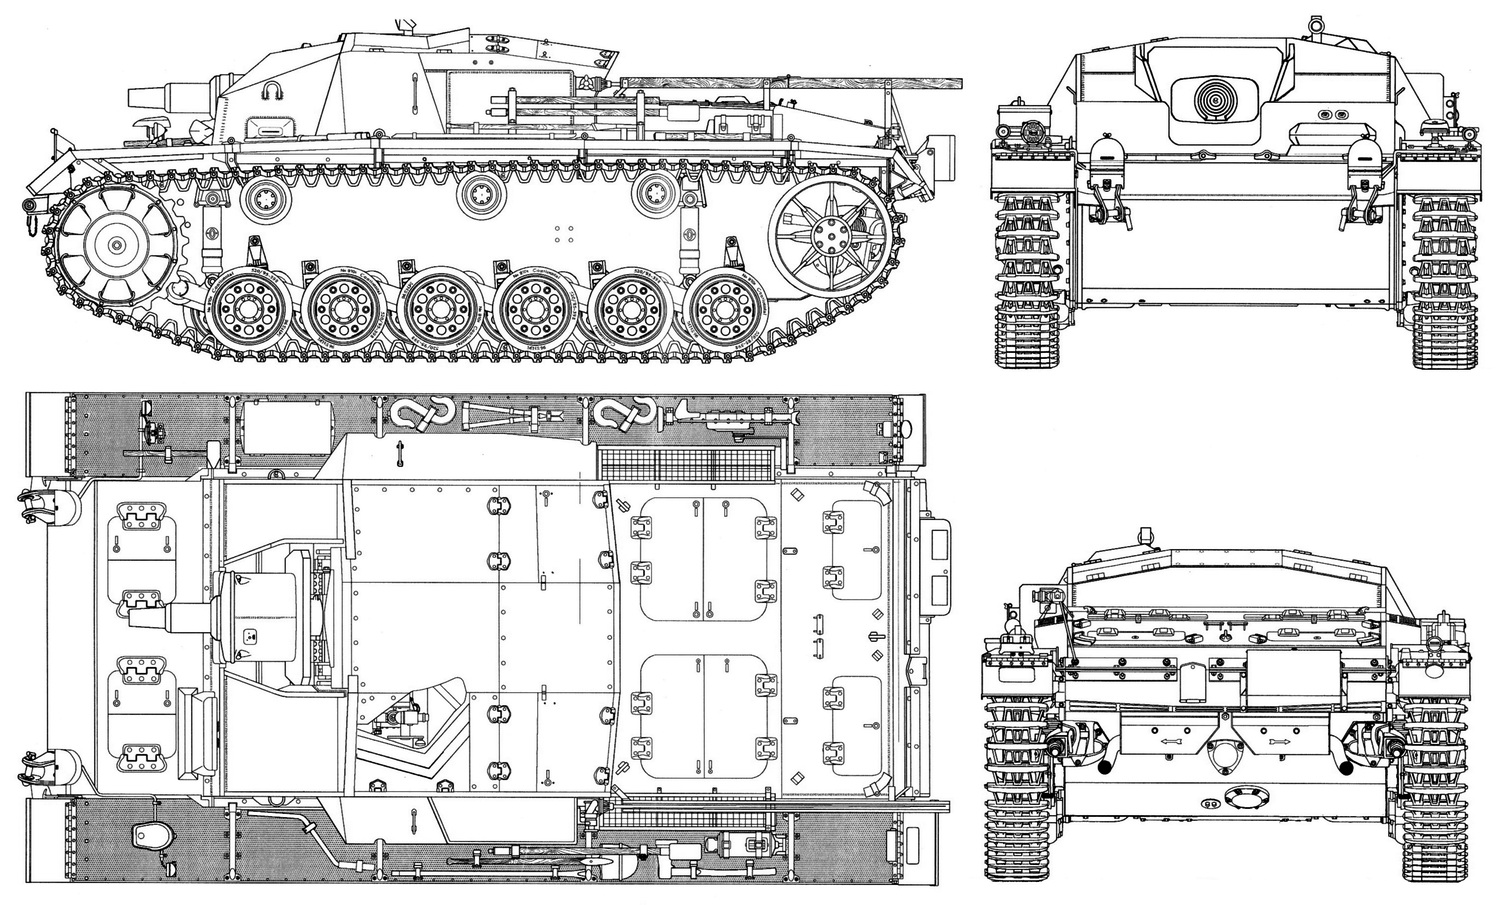 StuG III blueprint